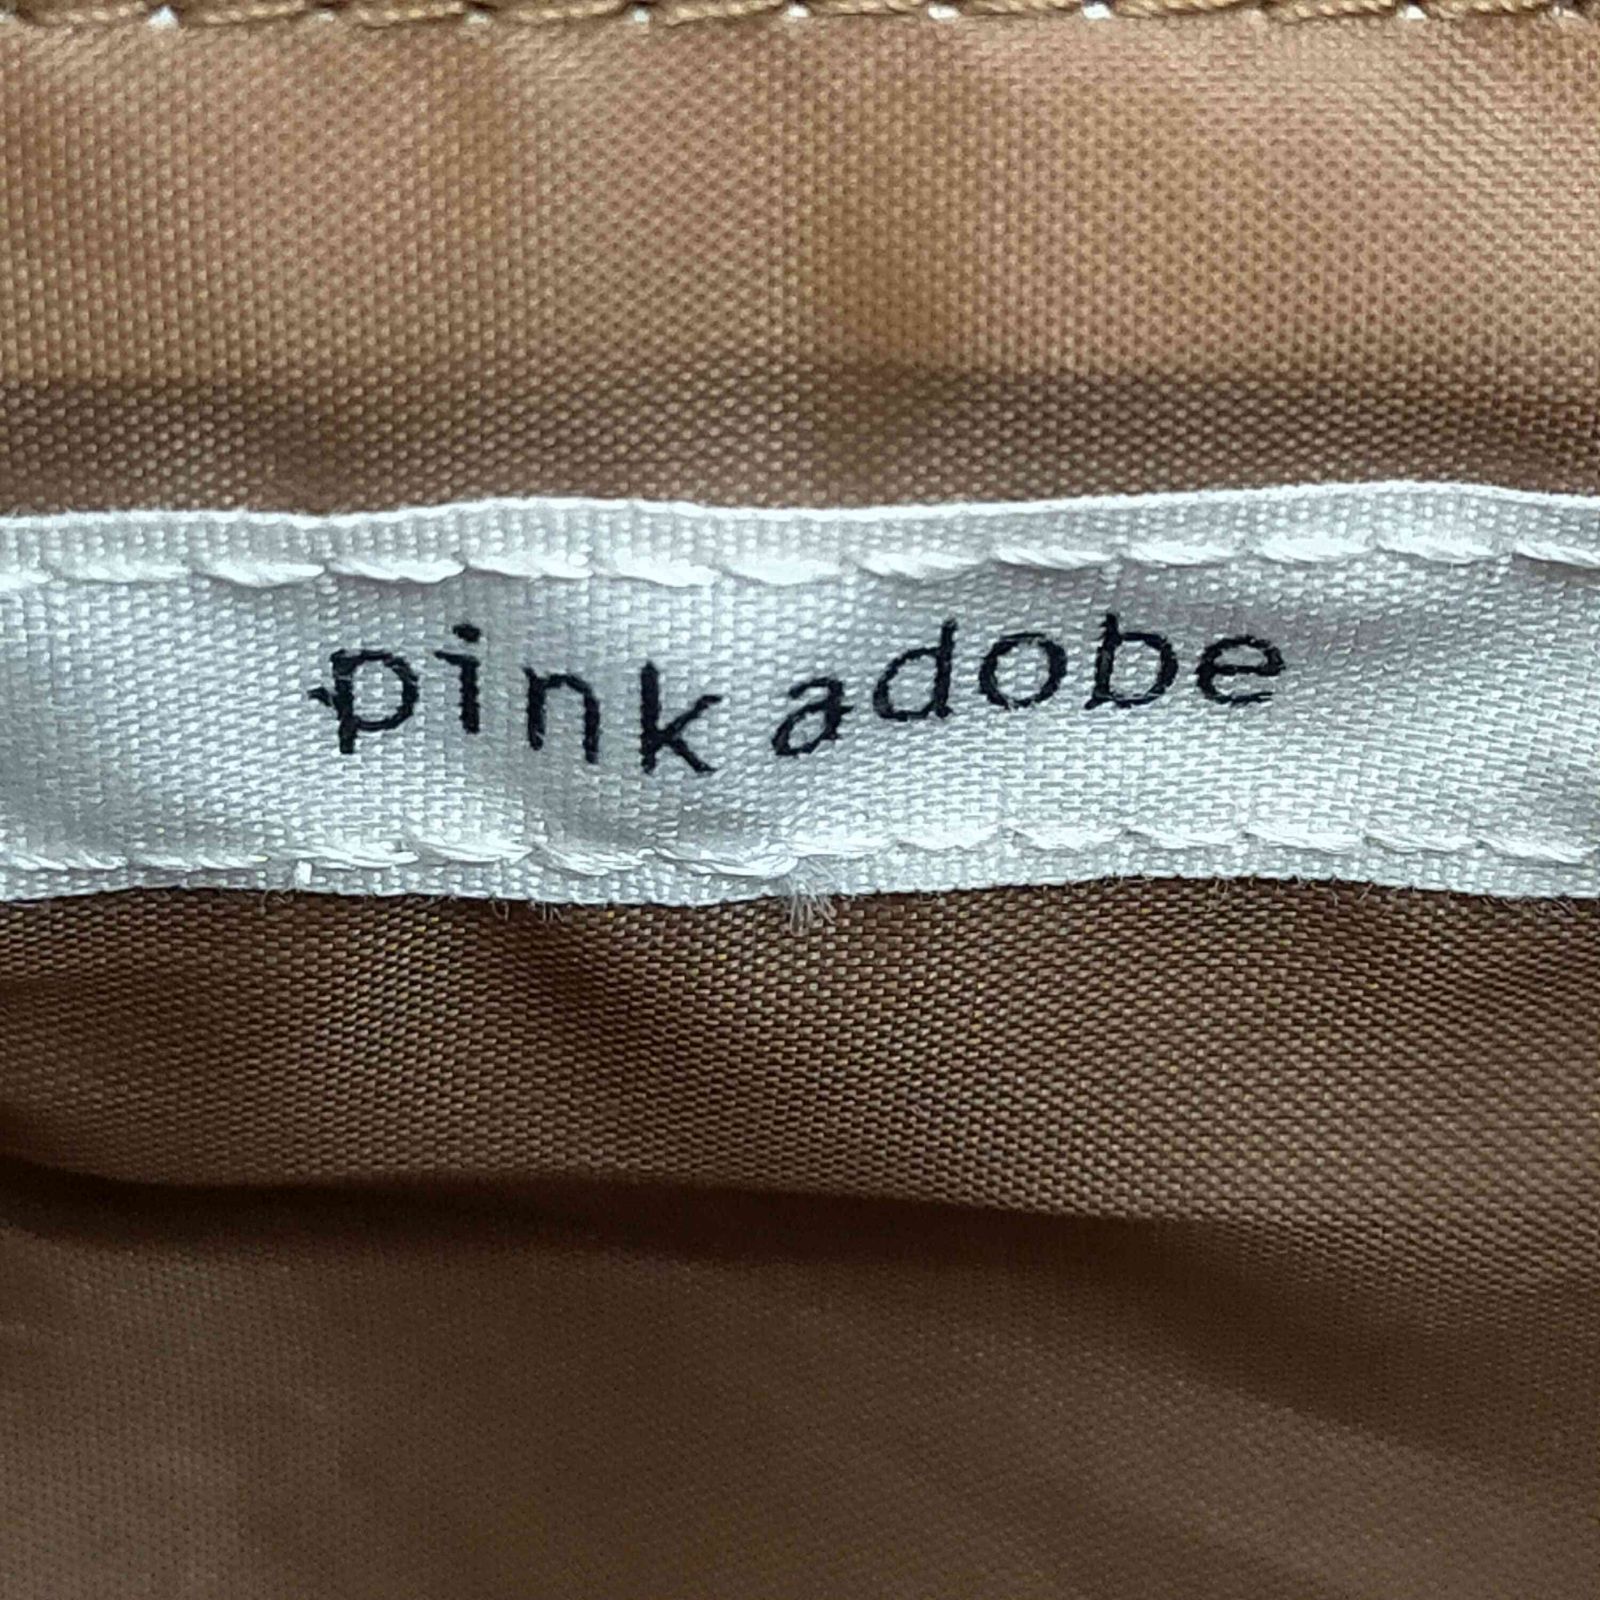 ピンクアドベ バッグ - ショルダーバッグ